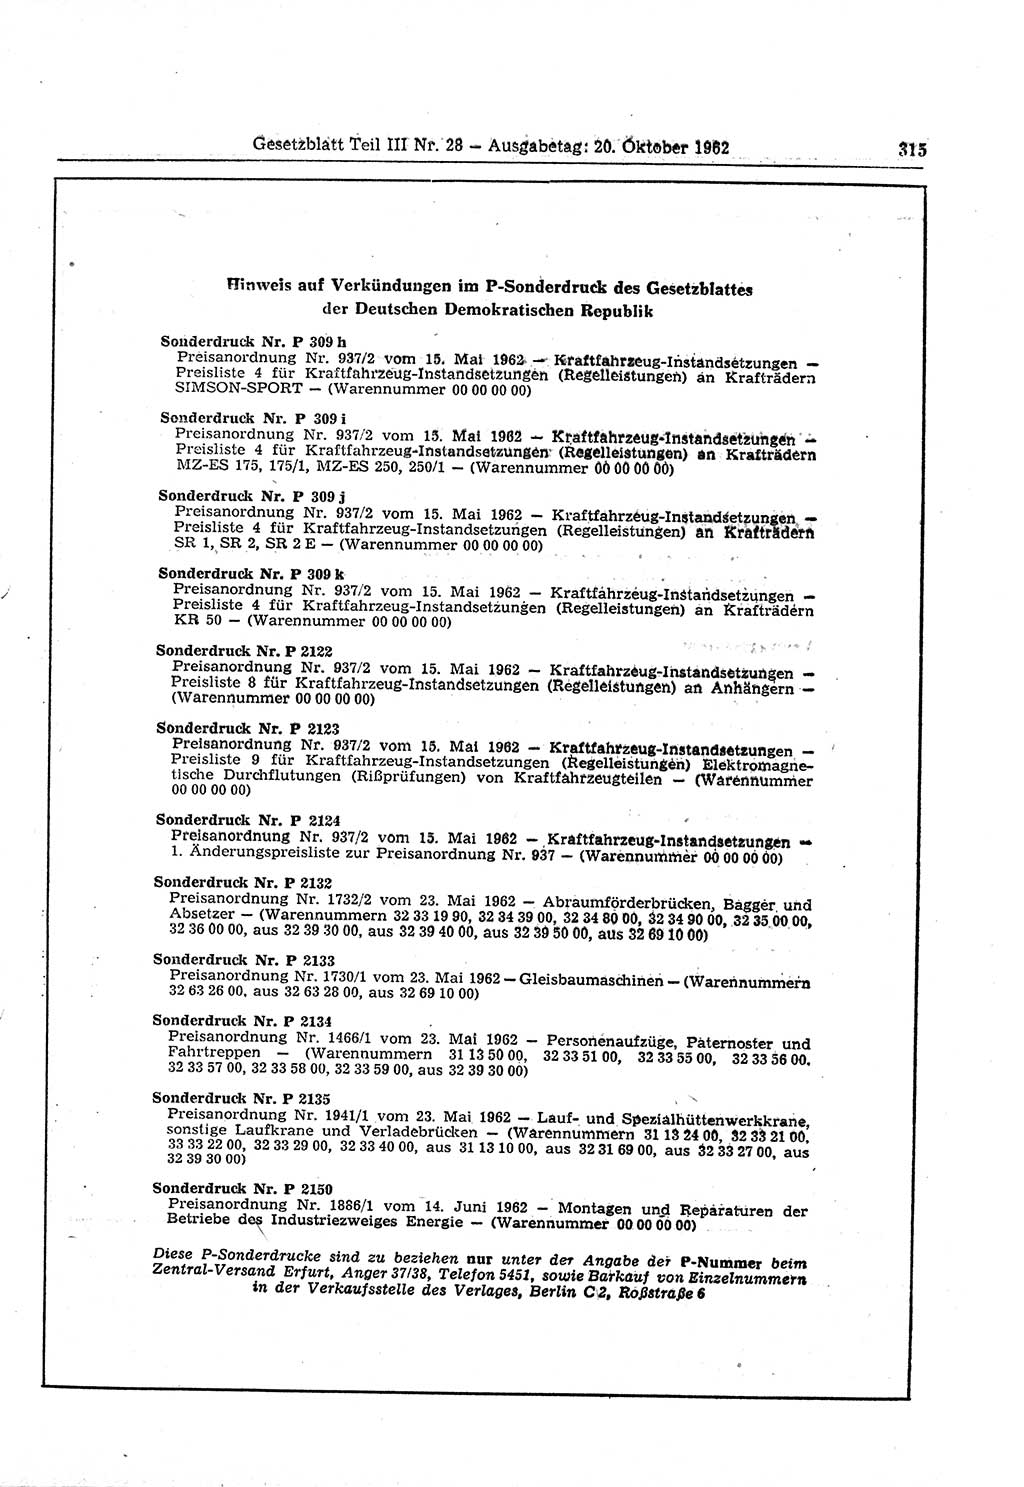 Gesetzblatt (GBl.) der Deutschen Demokratischen Republik (DDR) Teil ⅠⅠⅠ 1962, Seite 315 (GBl. DDR ⅠⅠⅠ 1962, S. 315)